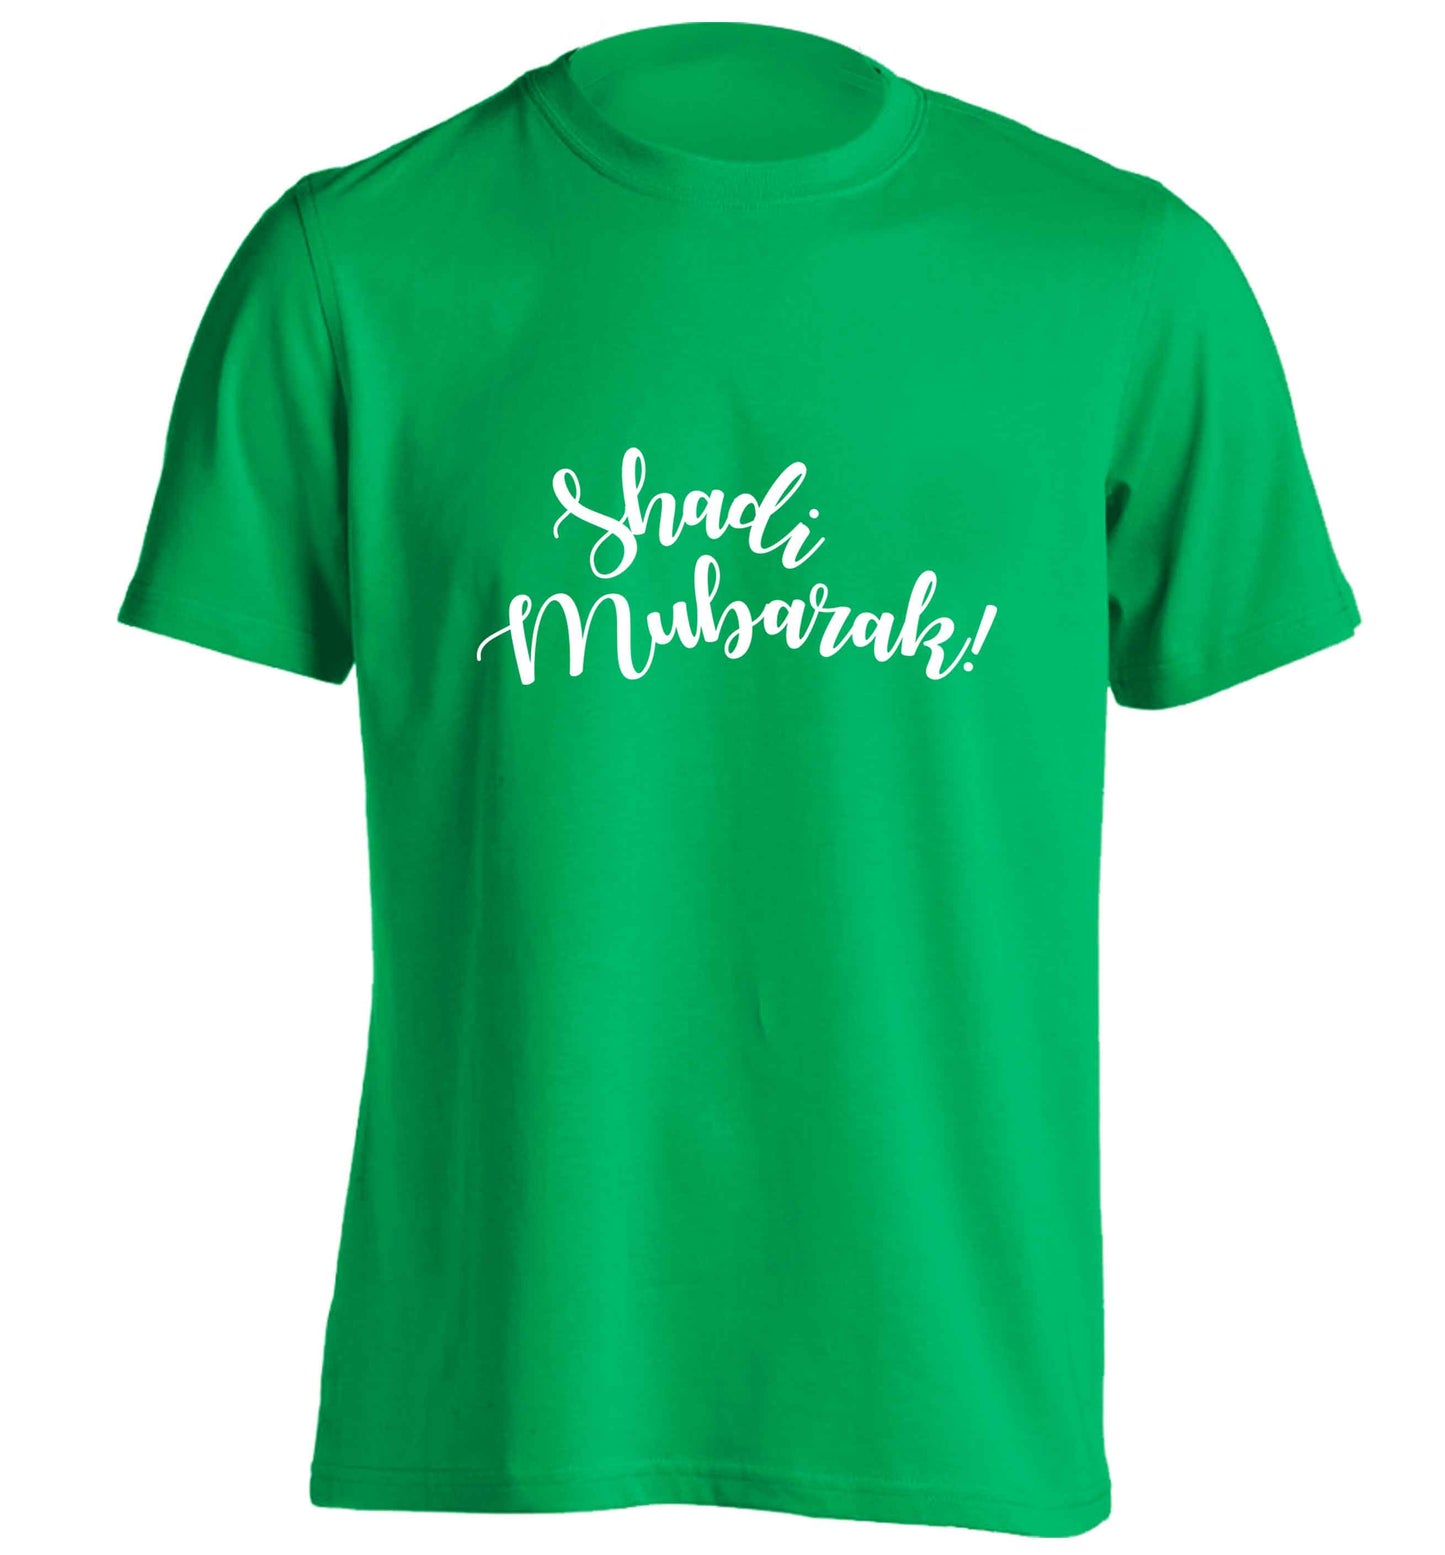 Shadi mubarak adults unisex green Tshirt 2XL